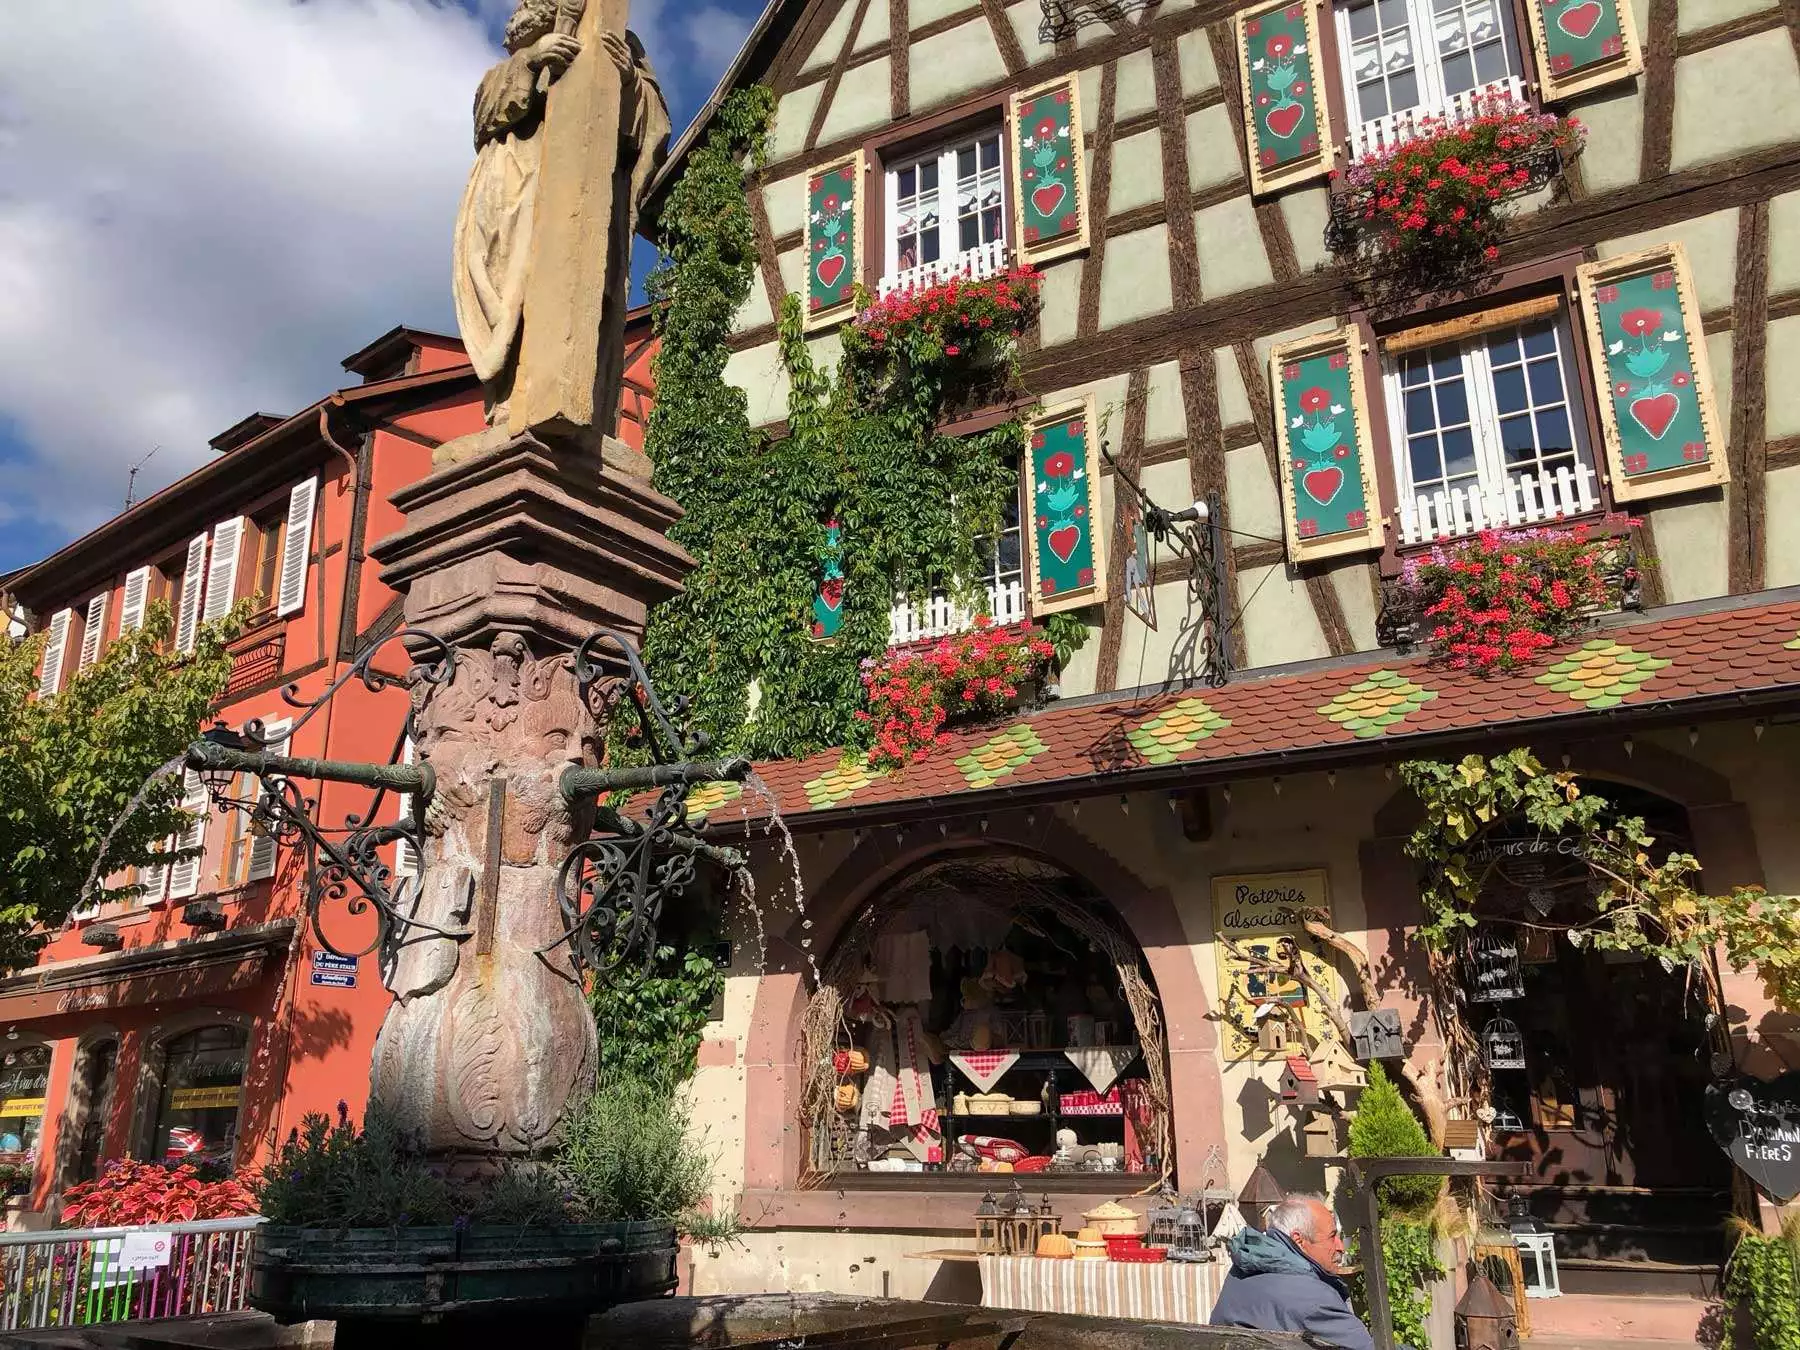 Pain d'épices - Visit Alsace